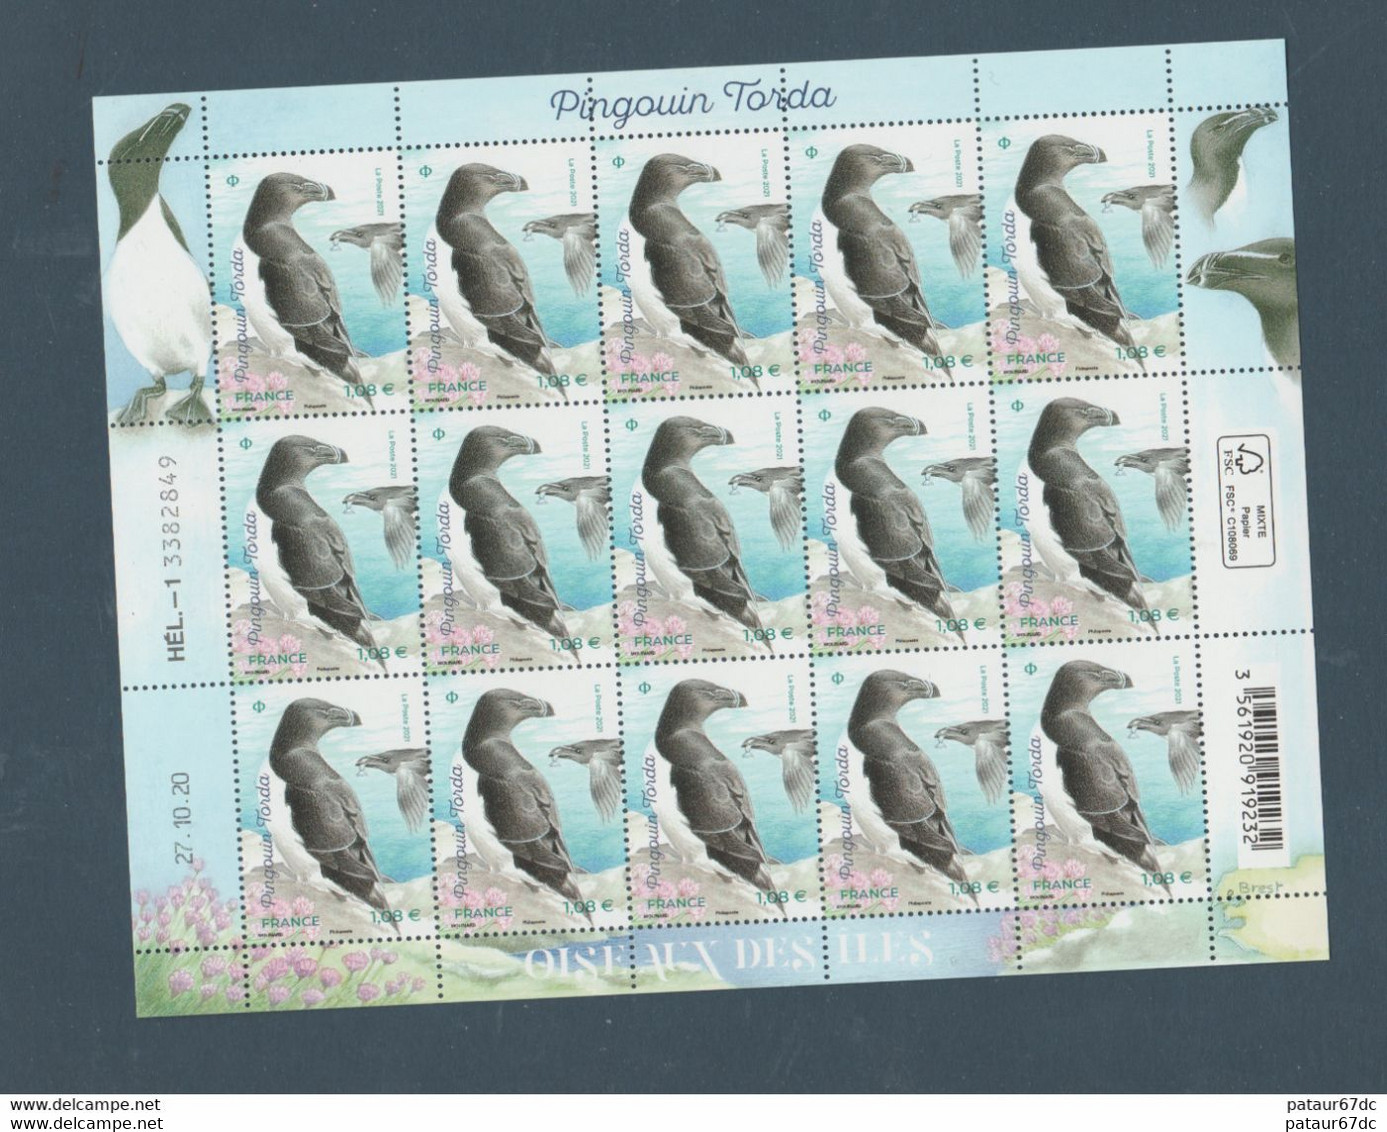 FRANCE / 2021 / Y&T N° 5459 ** : "Oiseaux Des îles" (Pingouin Torda) X 15 En Feuille (= Feuillet F10 X 1) - Full Sheets